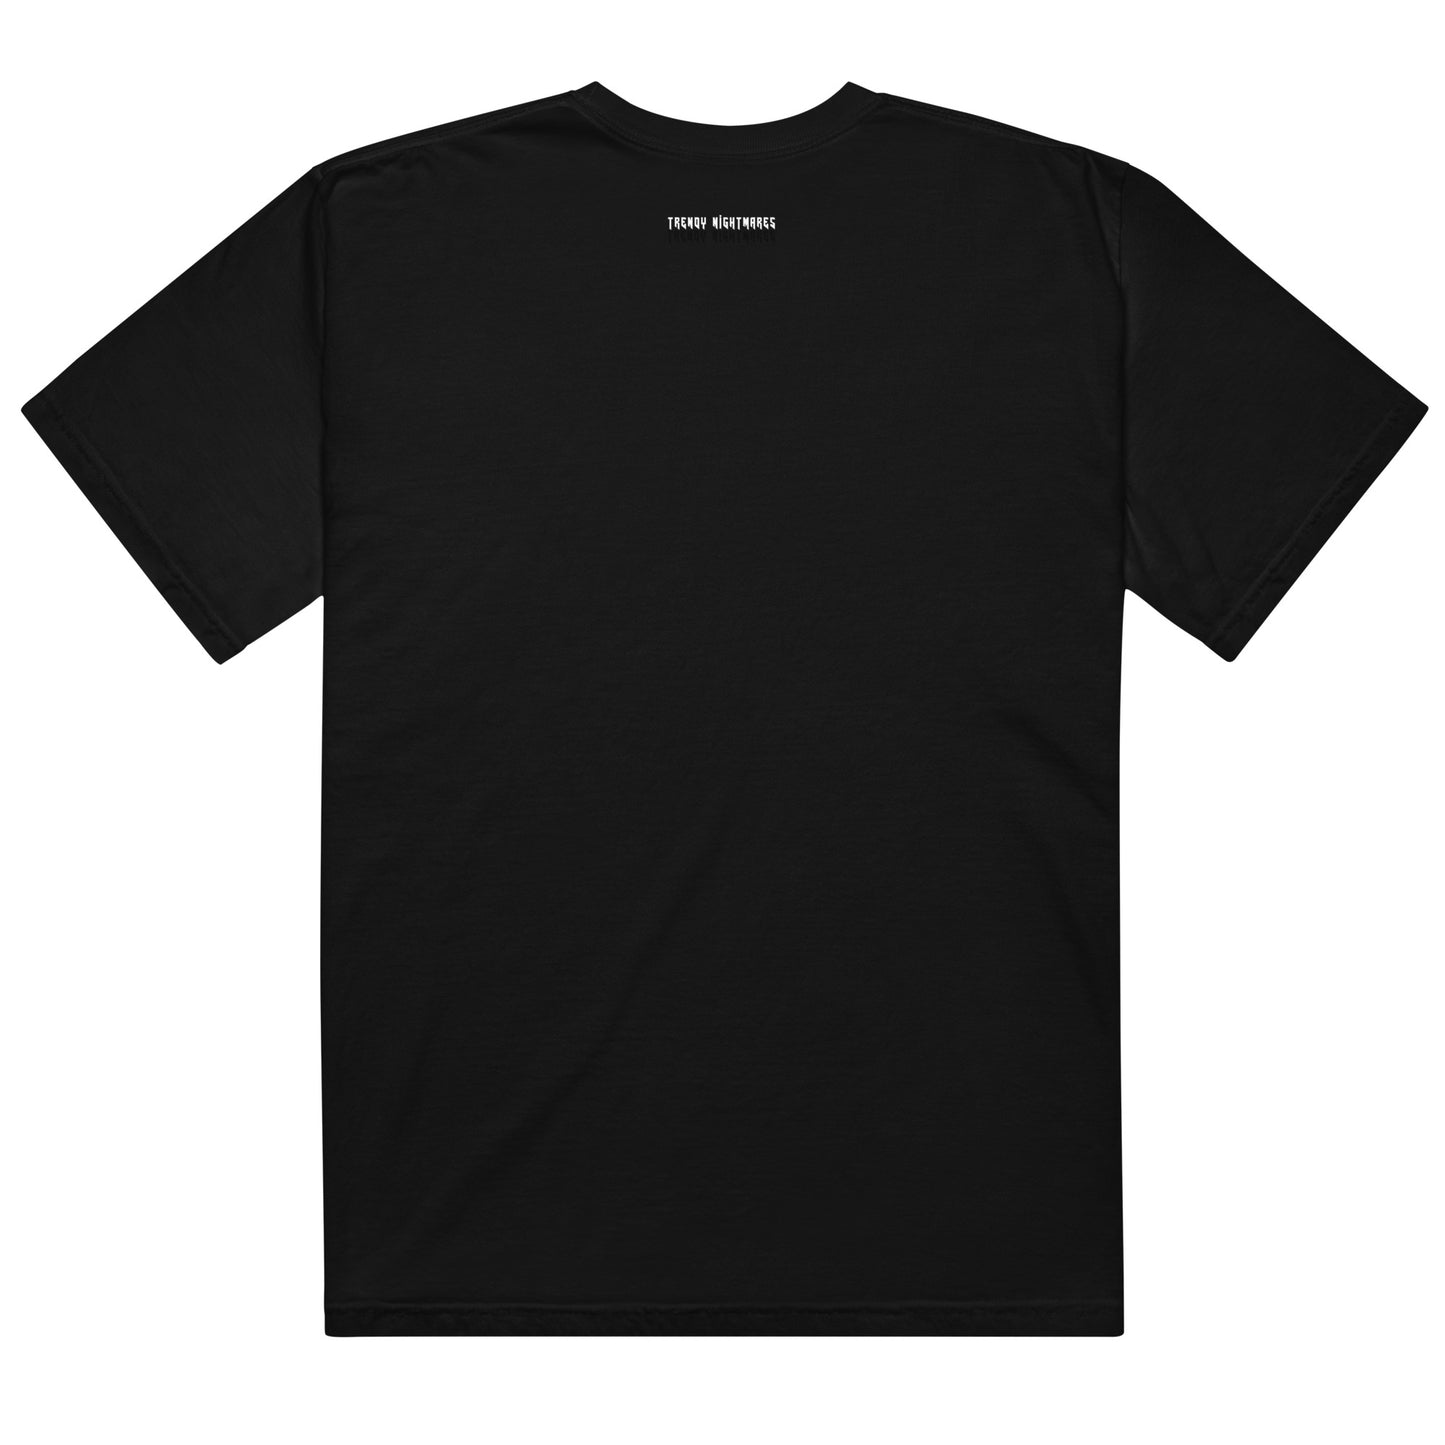 Printed T-Shirt for Men